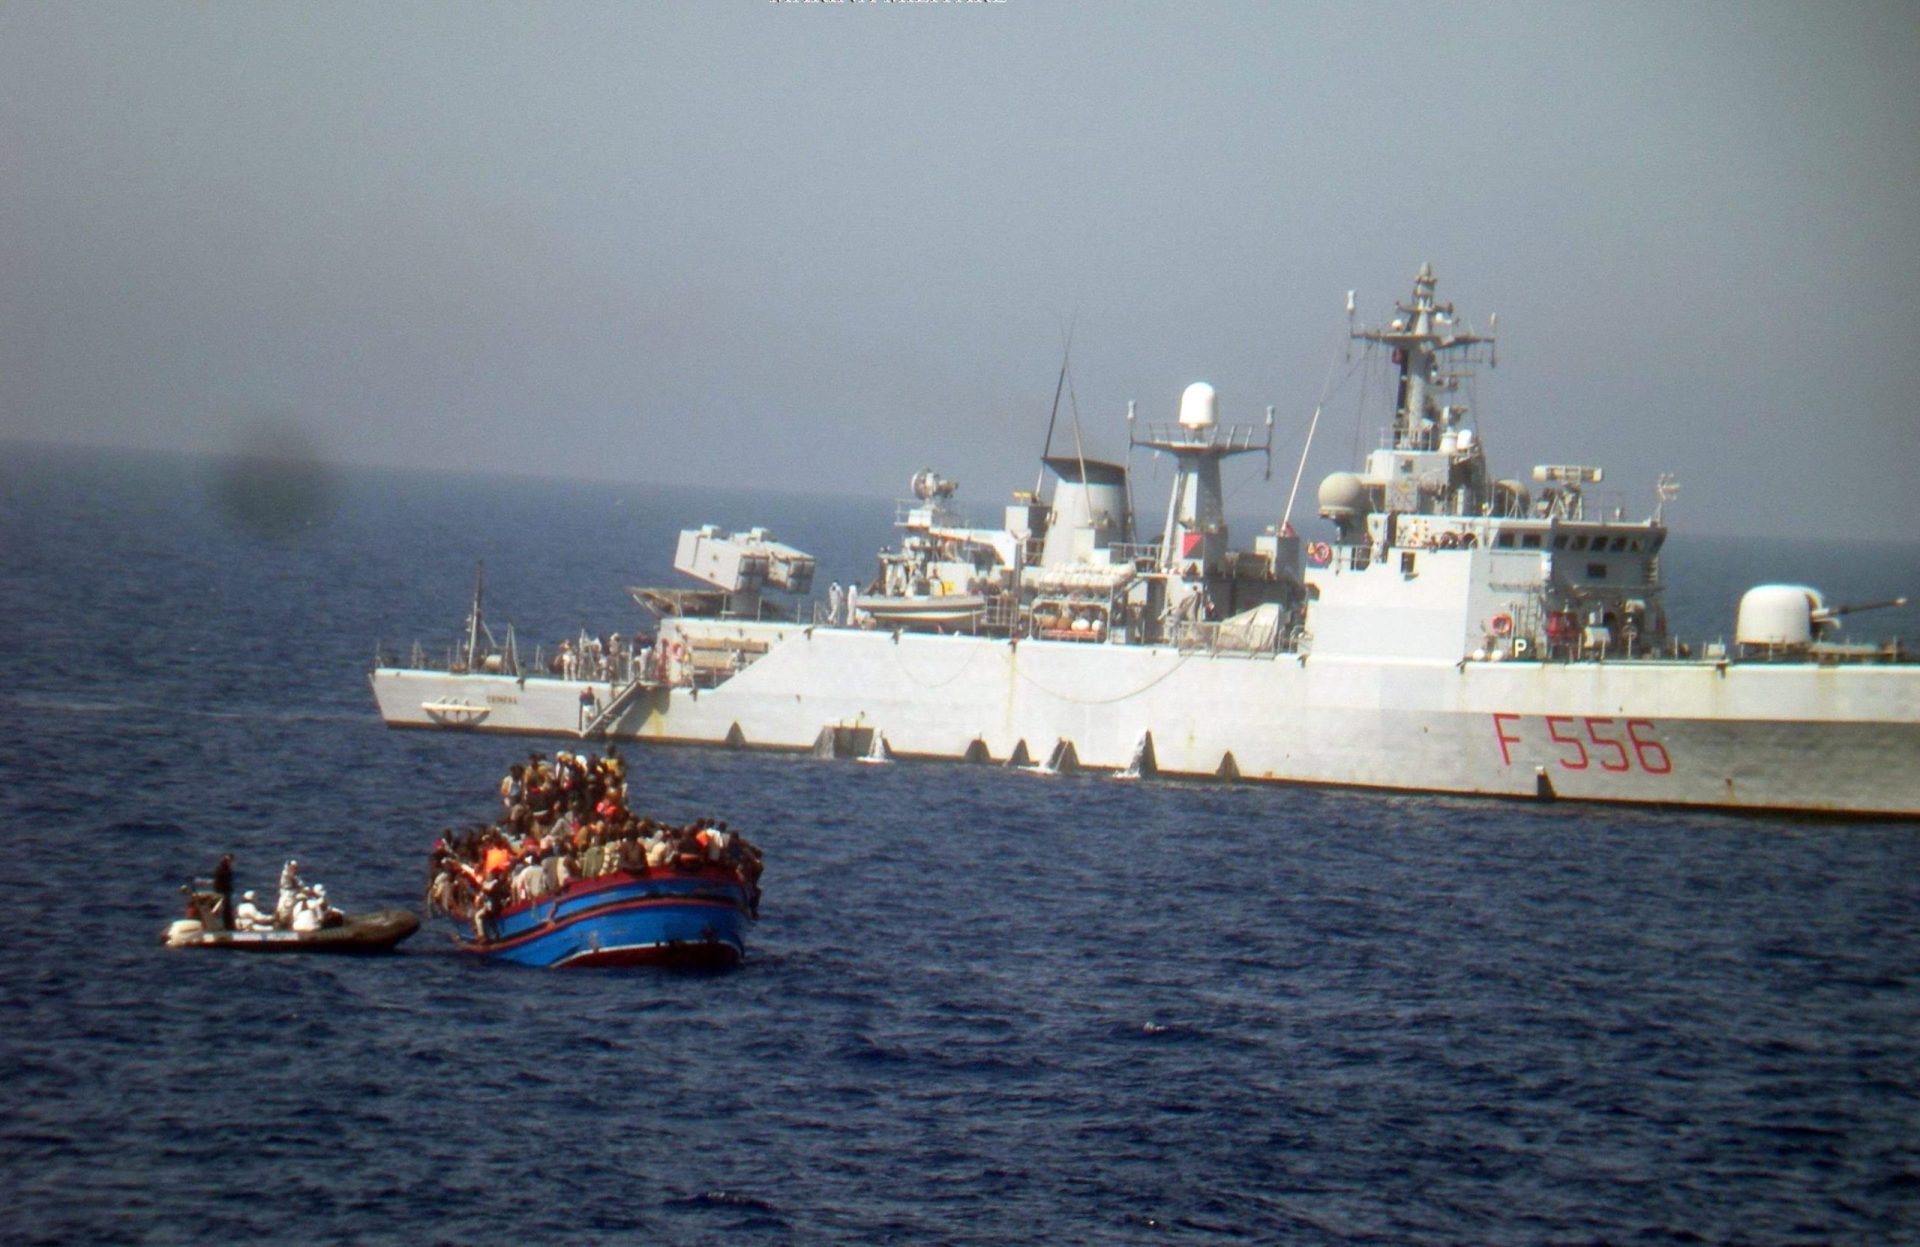 Marinha italiana encontra 30 corpos num navio no canal de Sicília